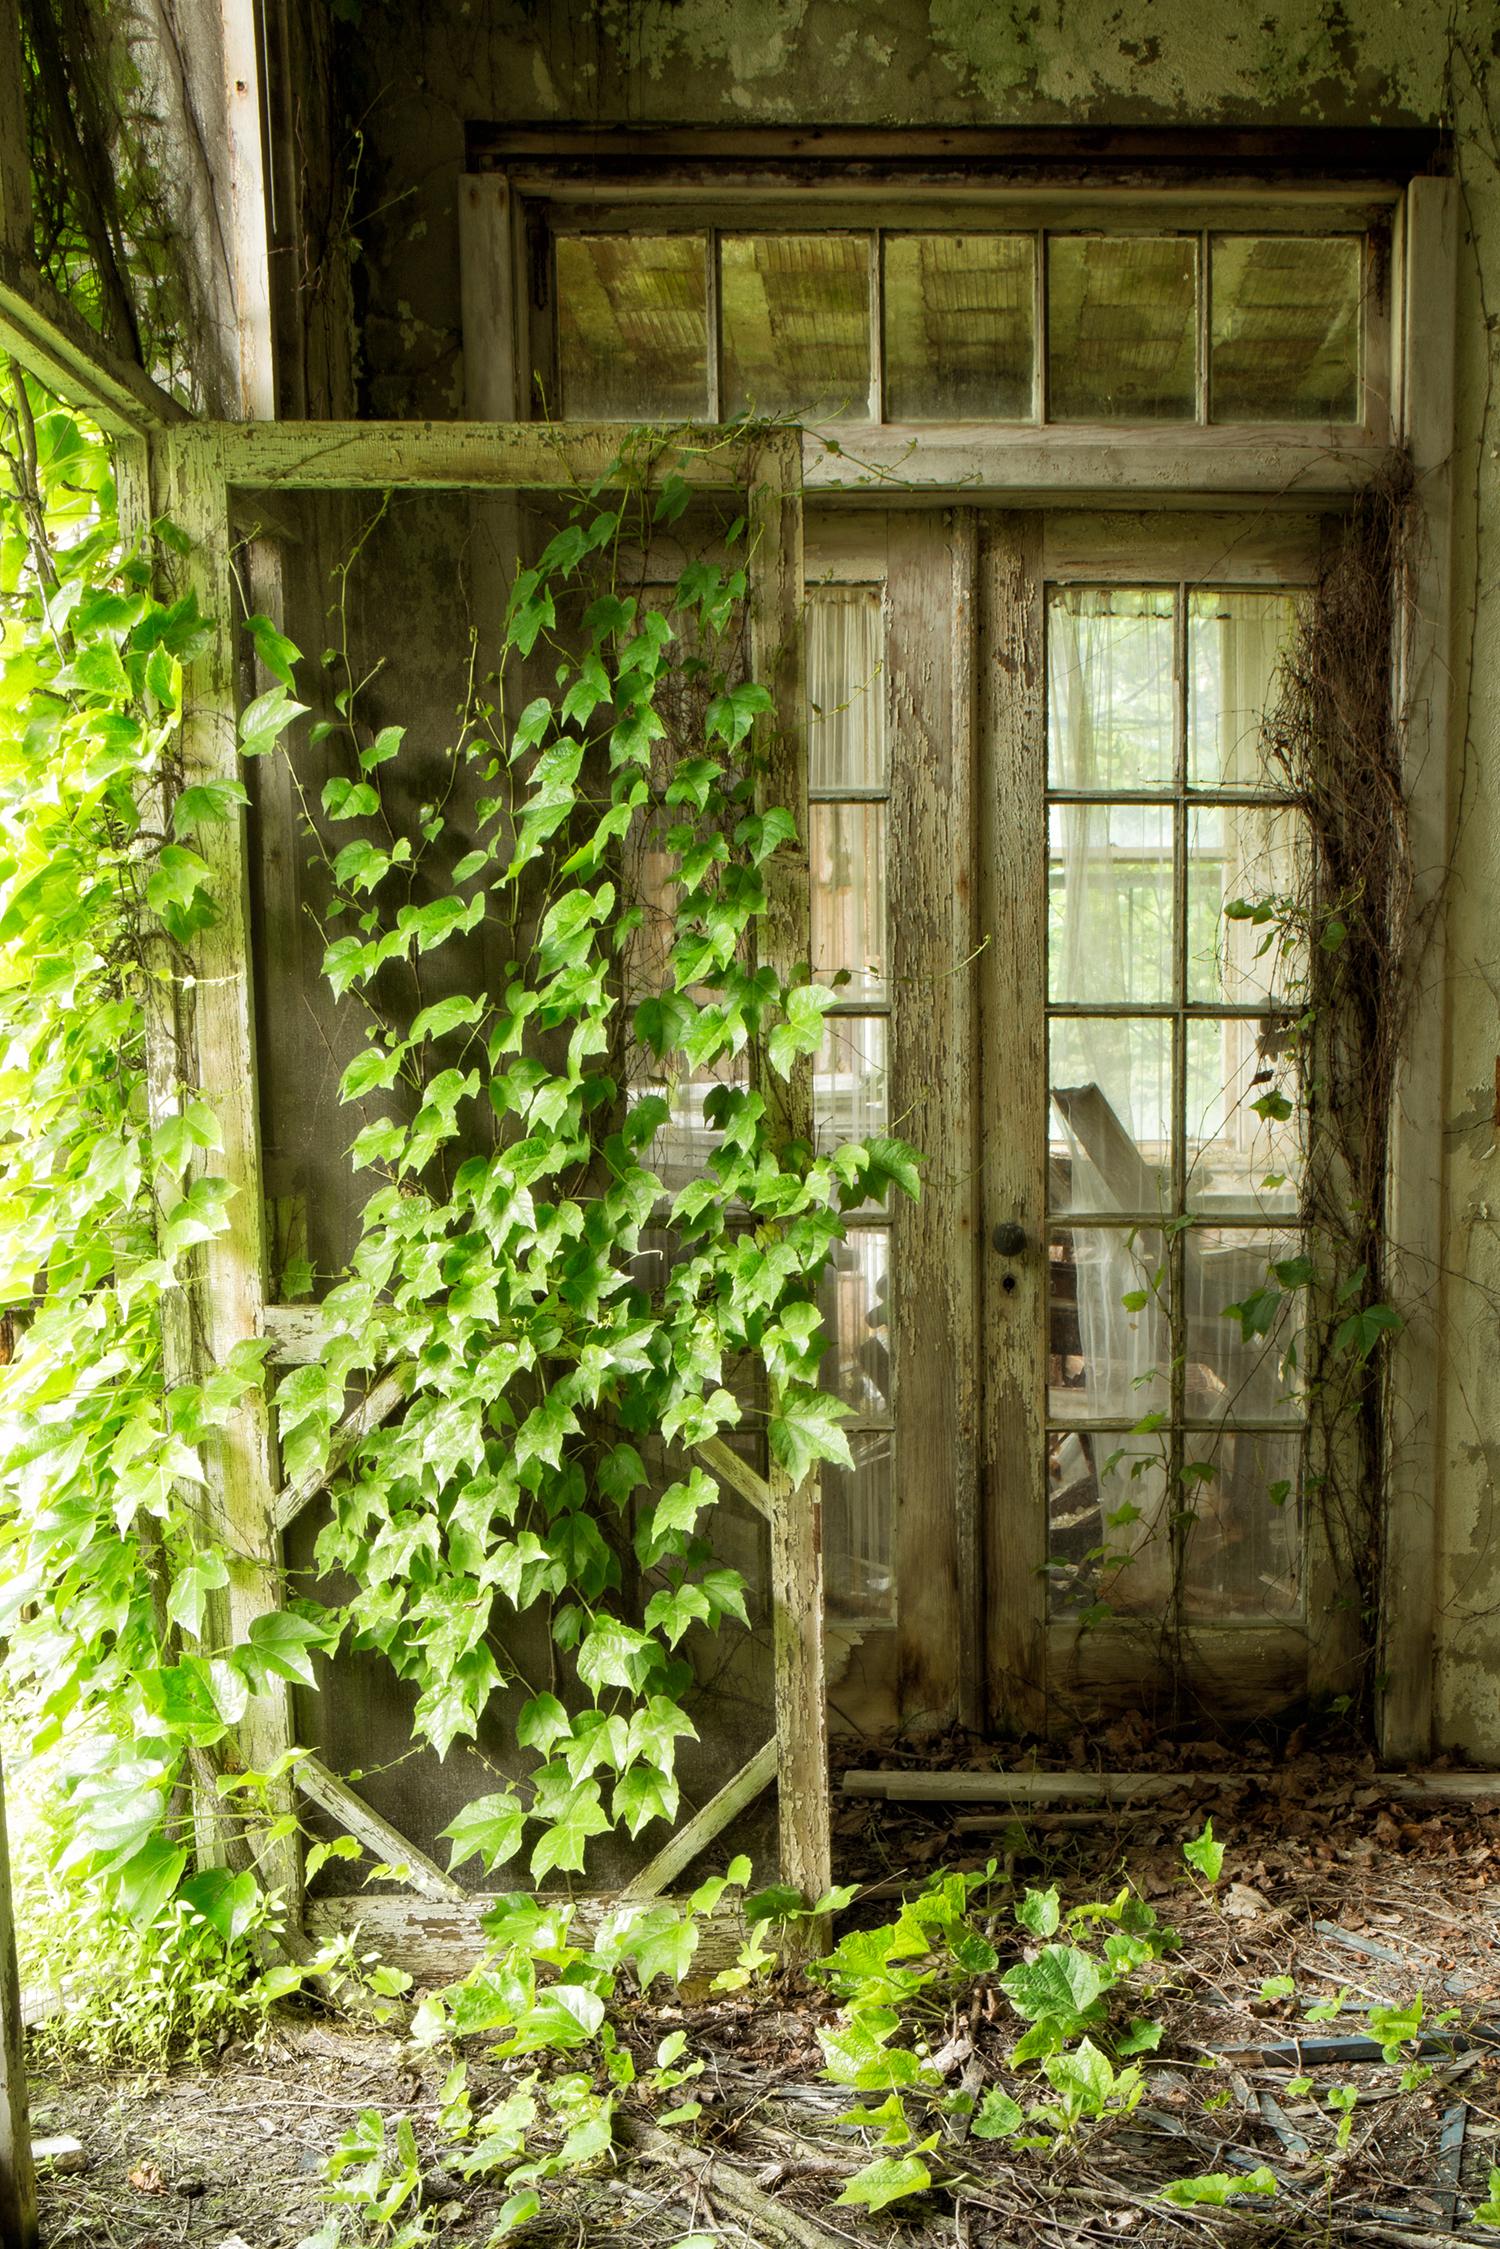 „Within“, verlassen, Natur, Weinreben, Türen, Veranda, Grün, Farbfotografie – Photograph von Rebecca Skinner